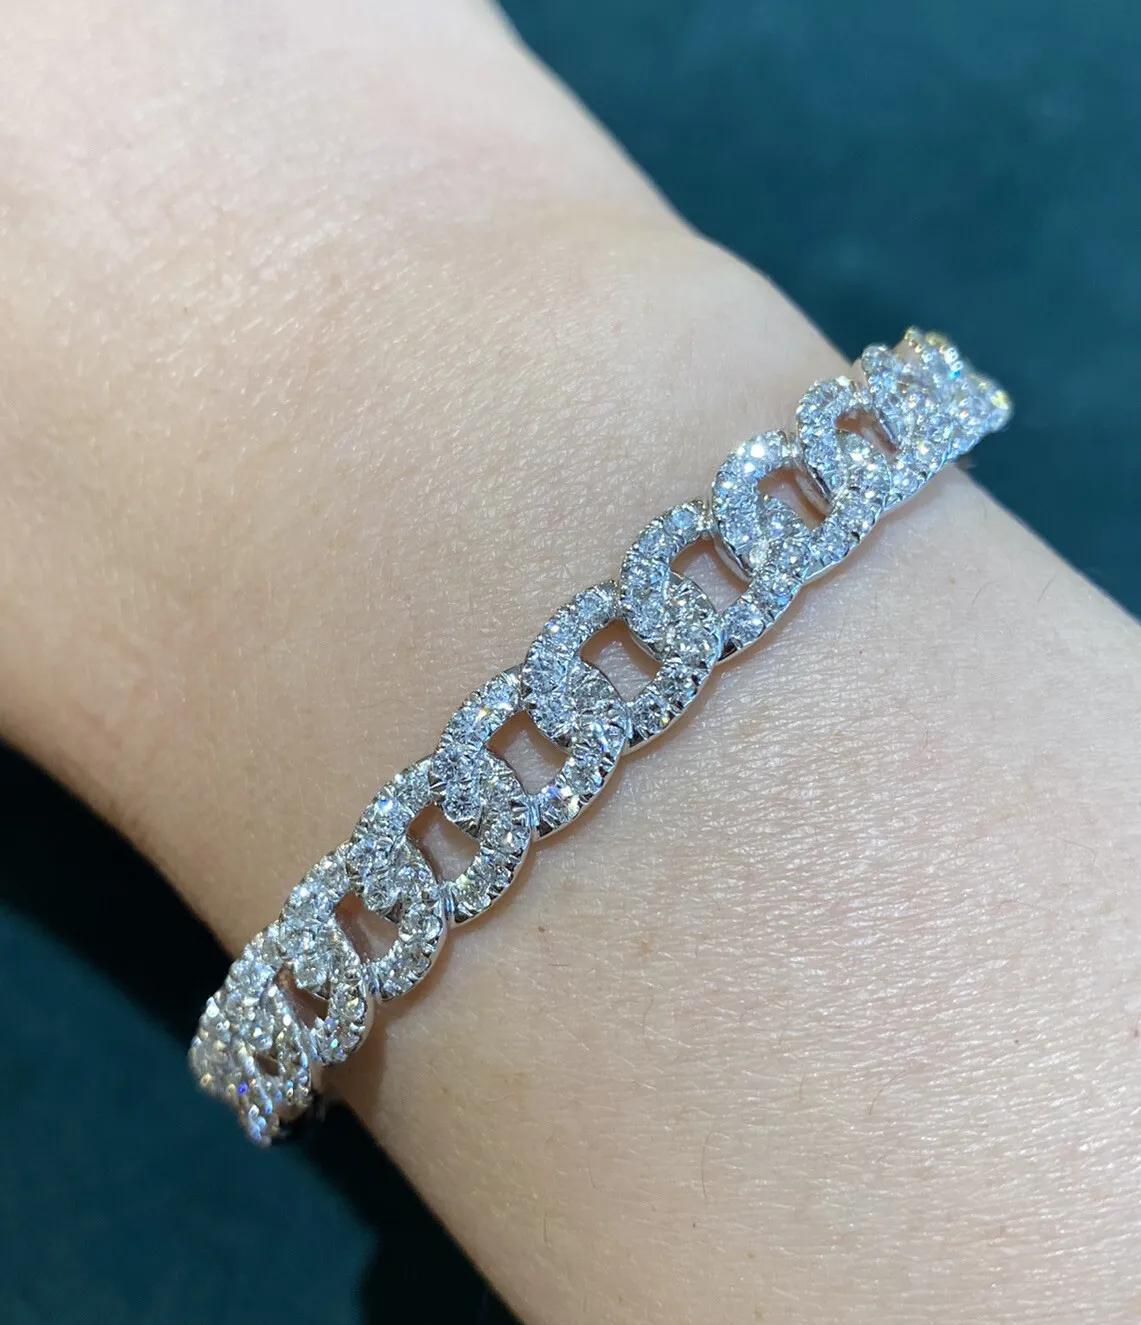 Bracelet à maillons en or blanc 18k et diamants

Le bracelet à maillons en diamant présente 2,79 carats de diamants ronds de taille brillante sertis dans de l'or blanc 18k.

Le poids total des diamants est de 2,79 carats.

Il convient à un poignet